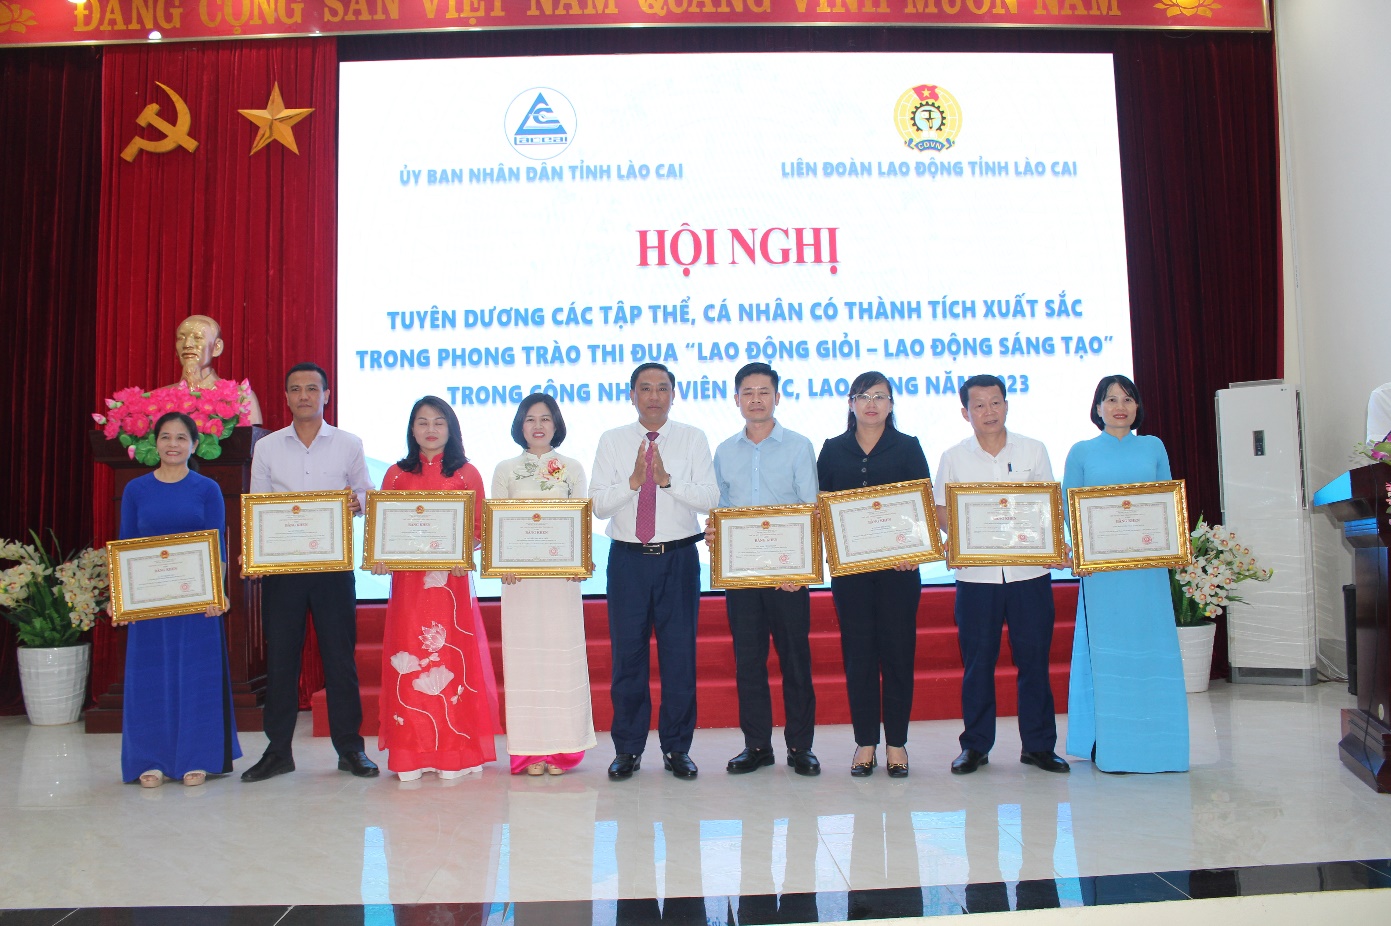 Công đoàn Viên chức tỉnh Lào Cai đẩy mạnh phong trào thi đua “Lao động giỏi,  Lao động sáng tạo” trong đội ngũ CNVCLĐ, góp phần nâng cao chất lượng, hiệu quả trong công tác.